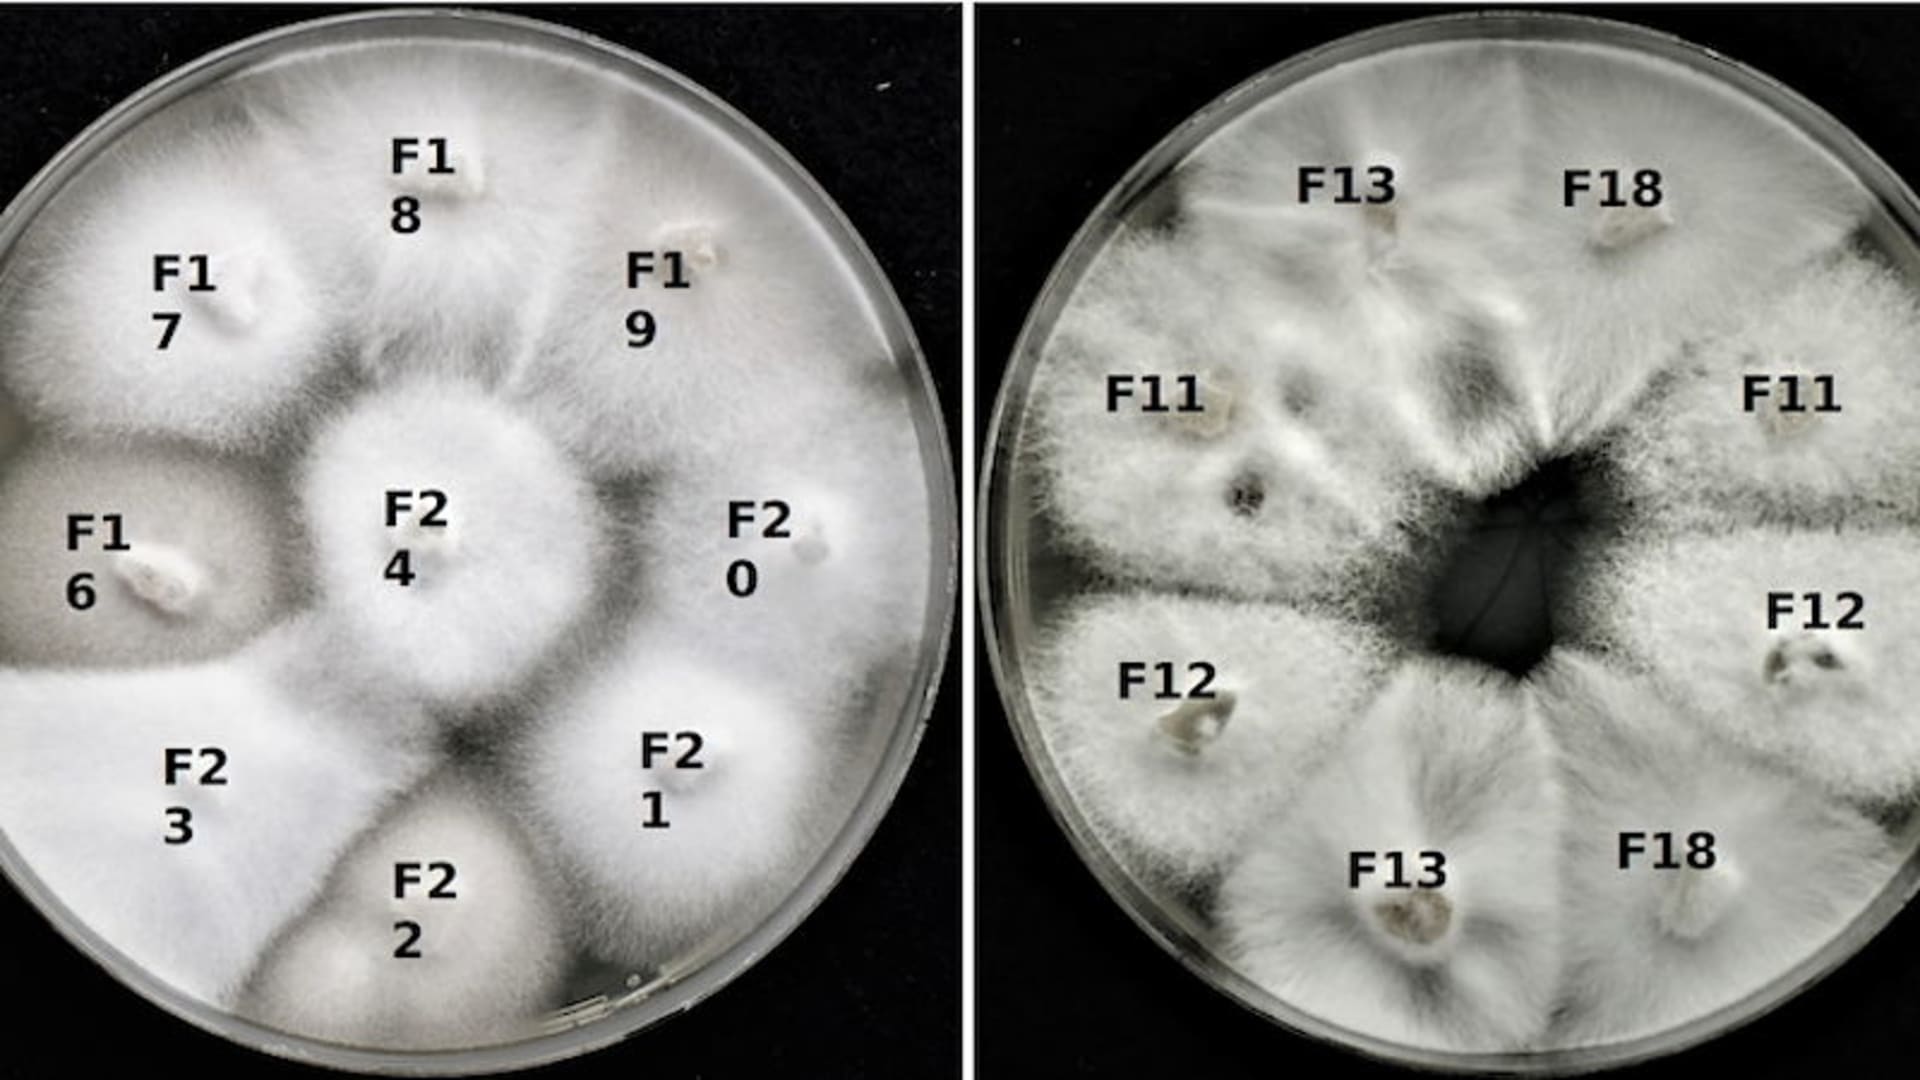 Kultury houby Sodiomyces alkalinus pěstované v laboratoři. Na první pohled není možné říci, které v sobě mají viry – po testování víme, že jsou to kultury F11, F12, F13 a F18.